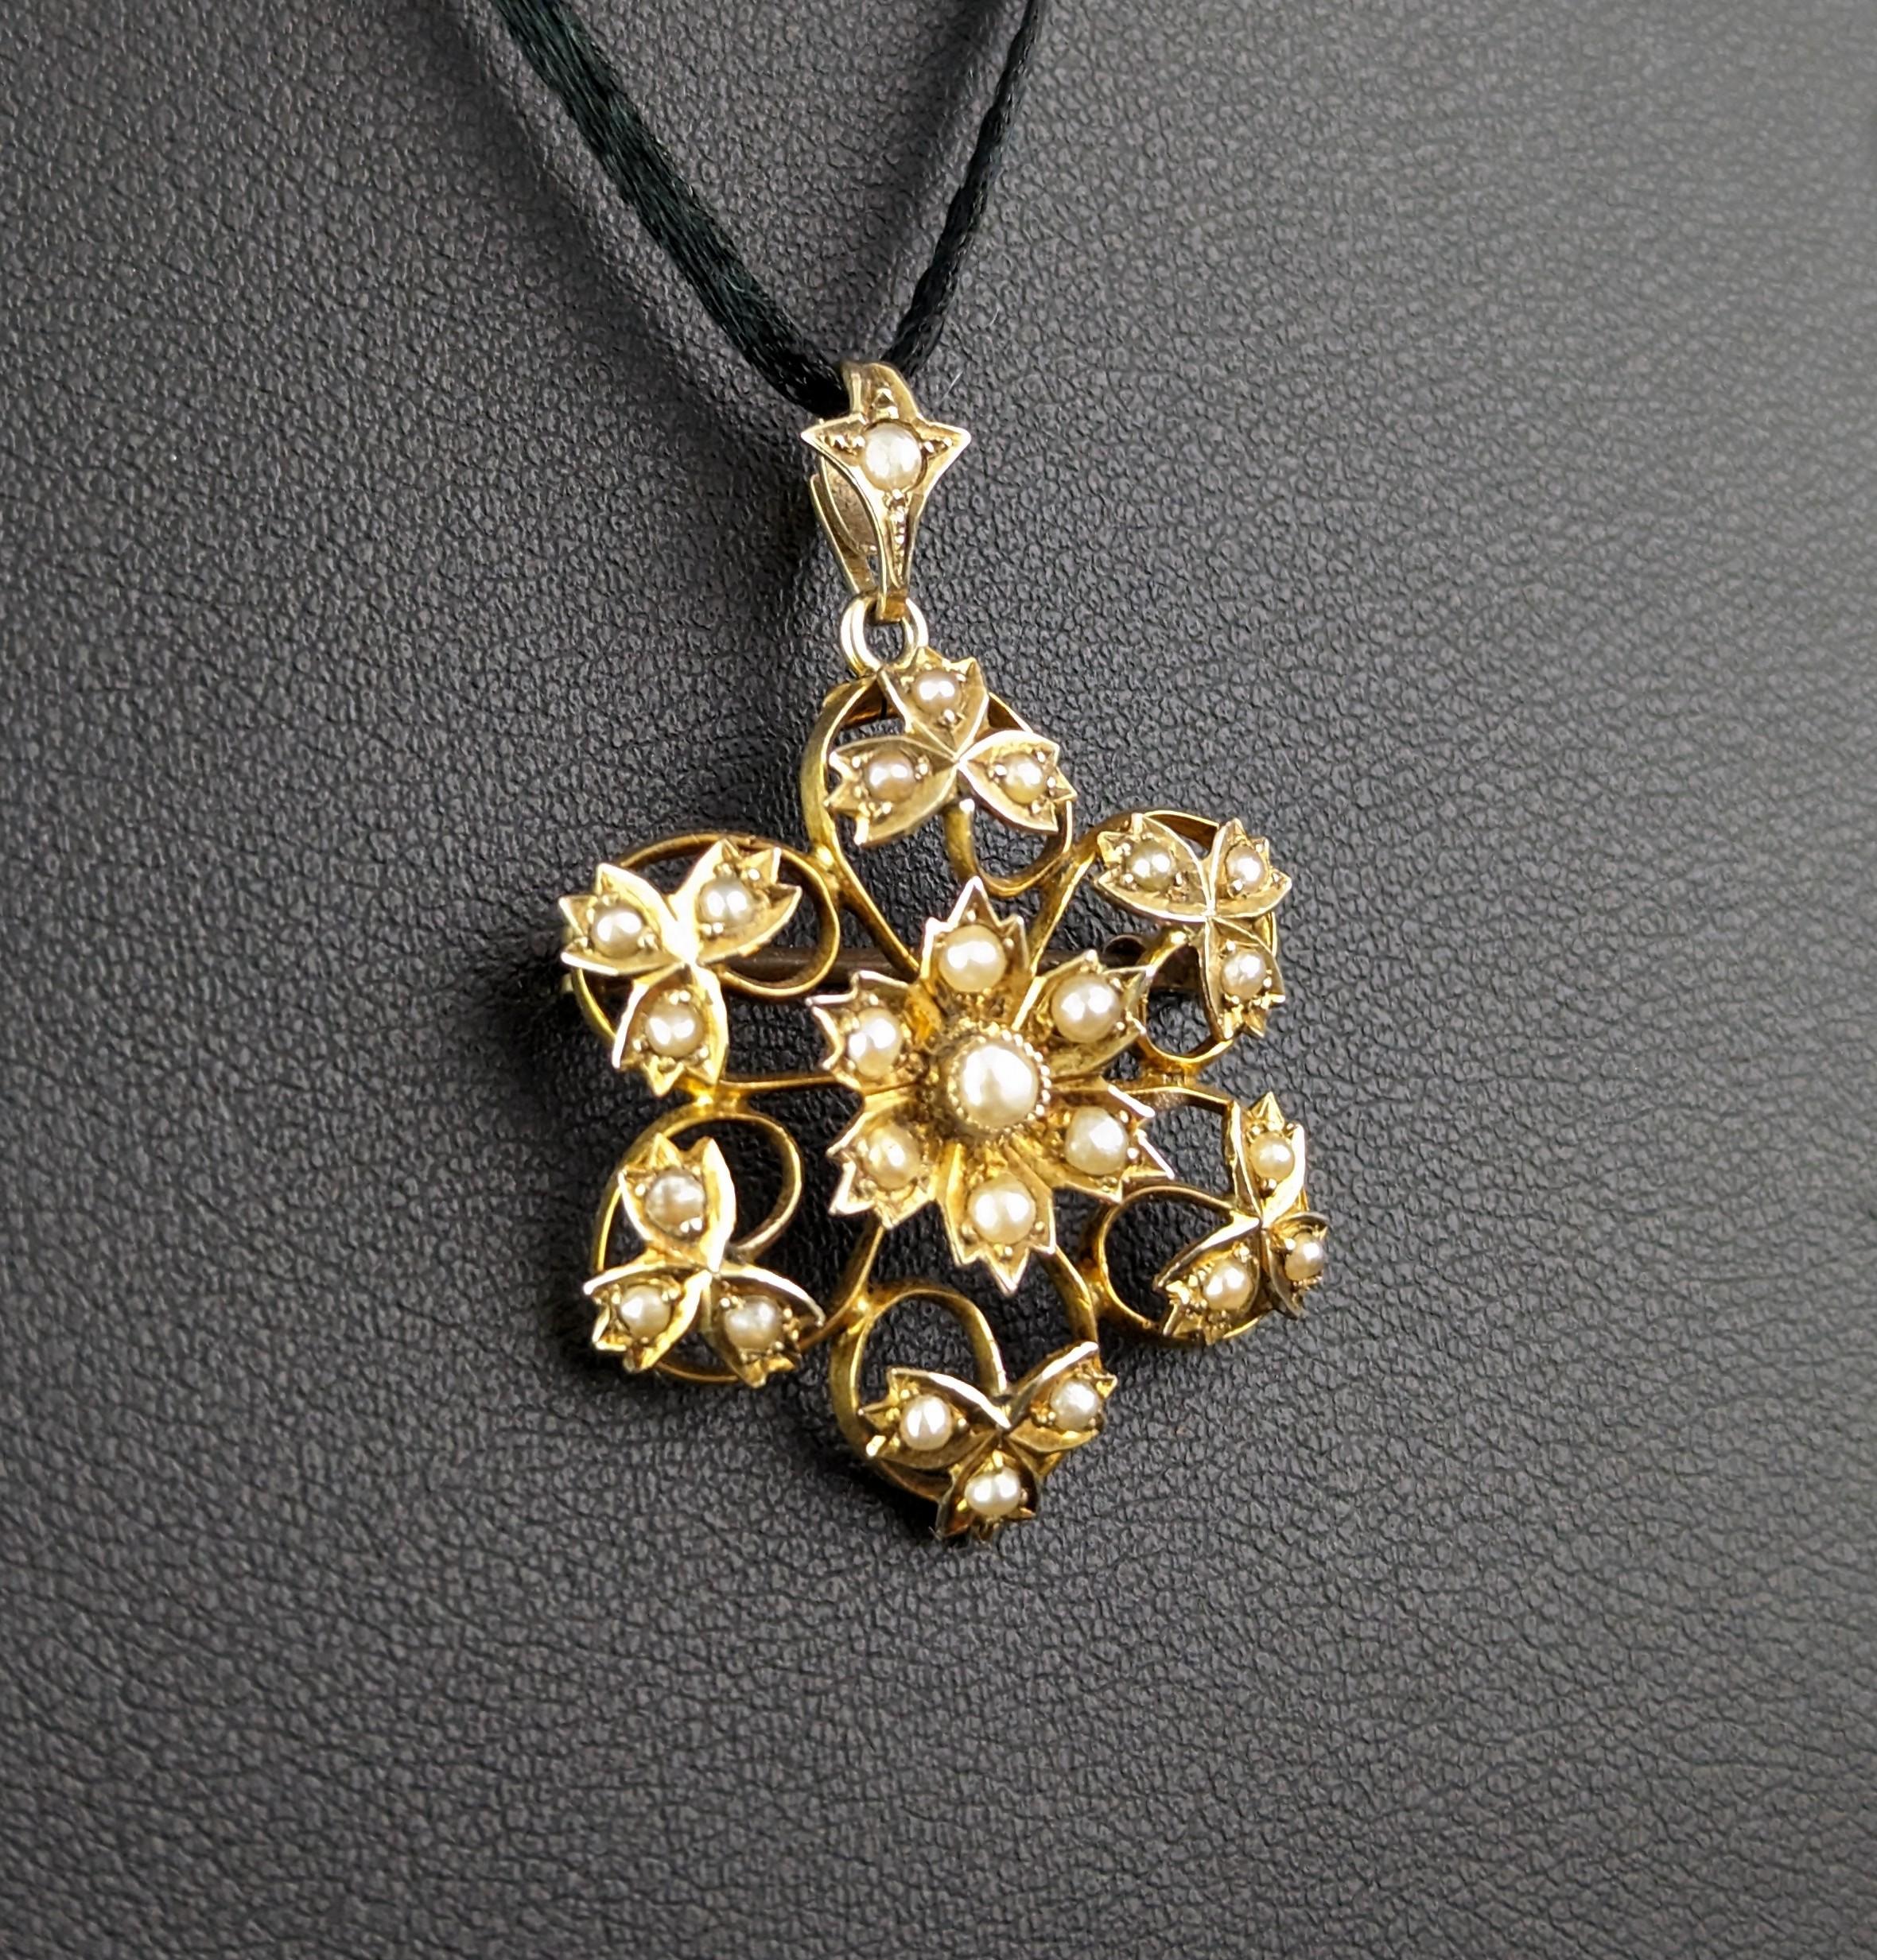 Cabochon Antique Art Nouveau pearl flower pendant brooch, 9k yellow gold 